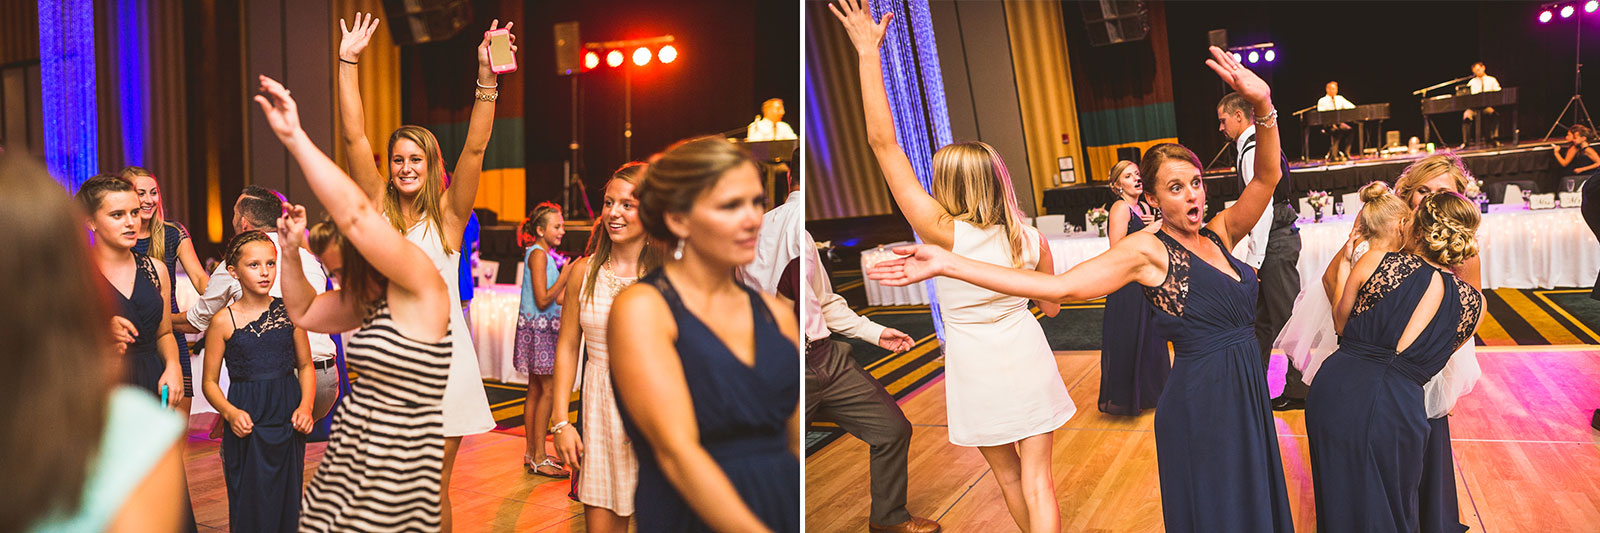 61 guests dancing at wedding